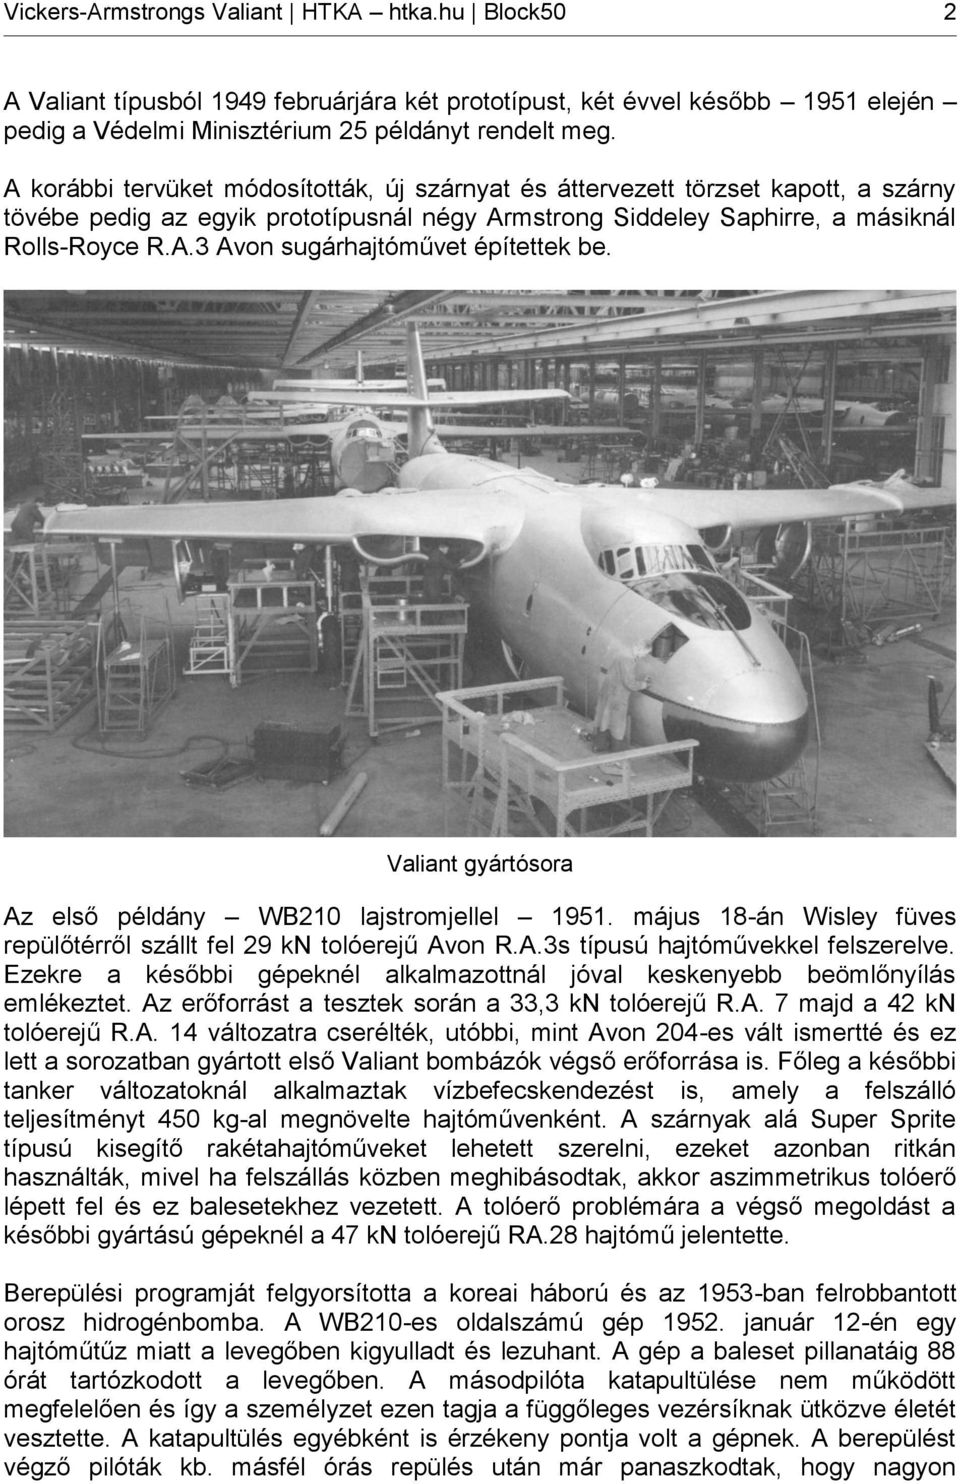 Valiant gyártósora Az első példány WB210 lajstromjellel 1951. május 18-án Wisley füves repülőtérről szállt fel 29 kn tolóerejű Avon R.A.3s típusú hajtóművekkel felszerelve.